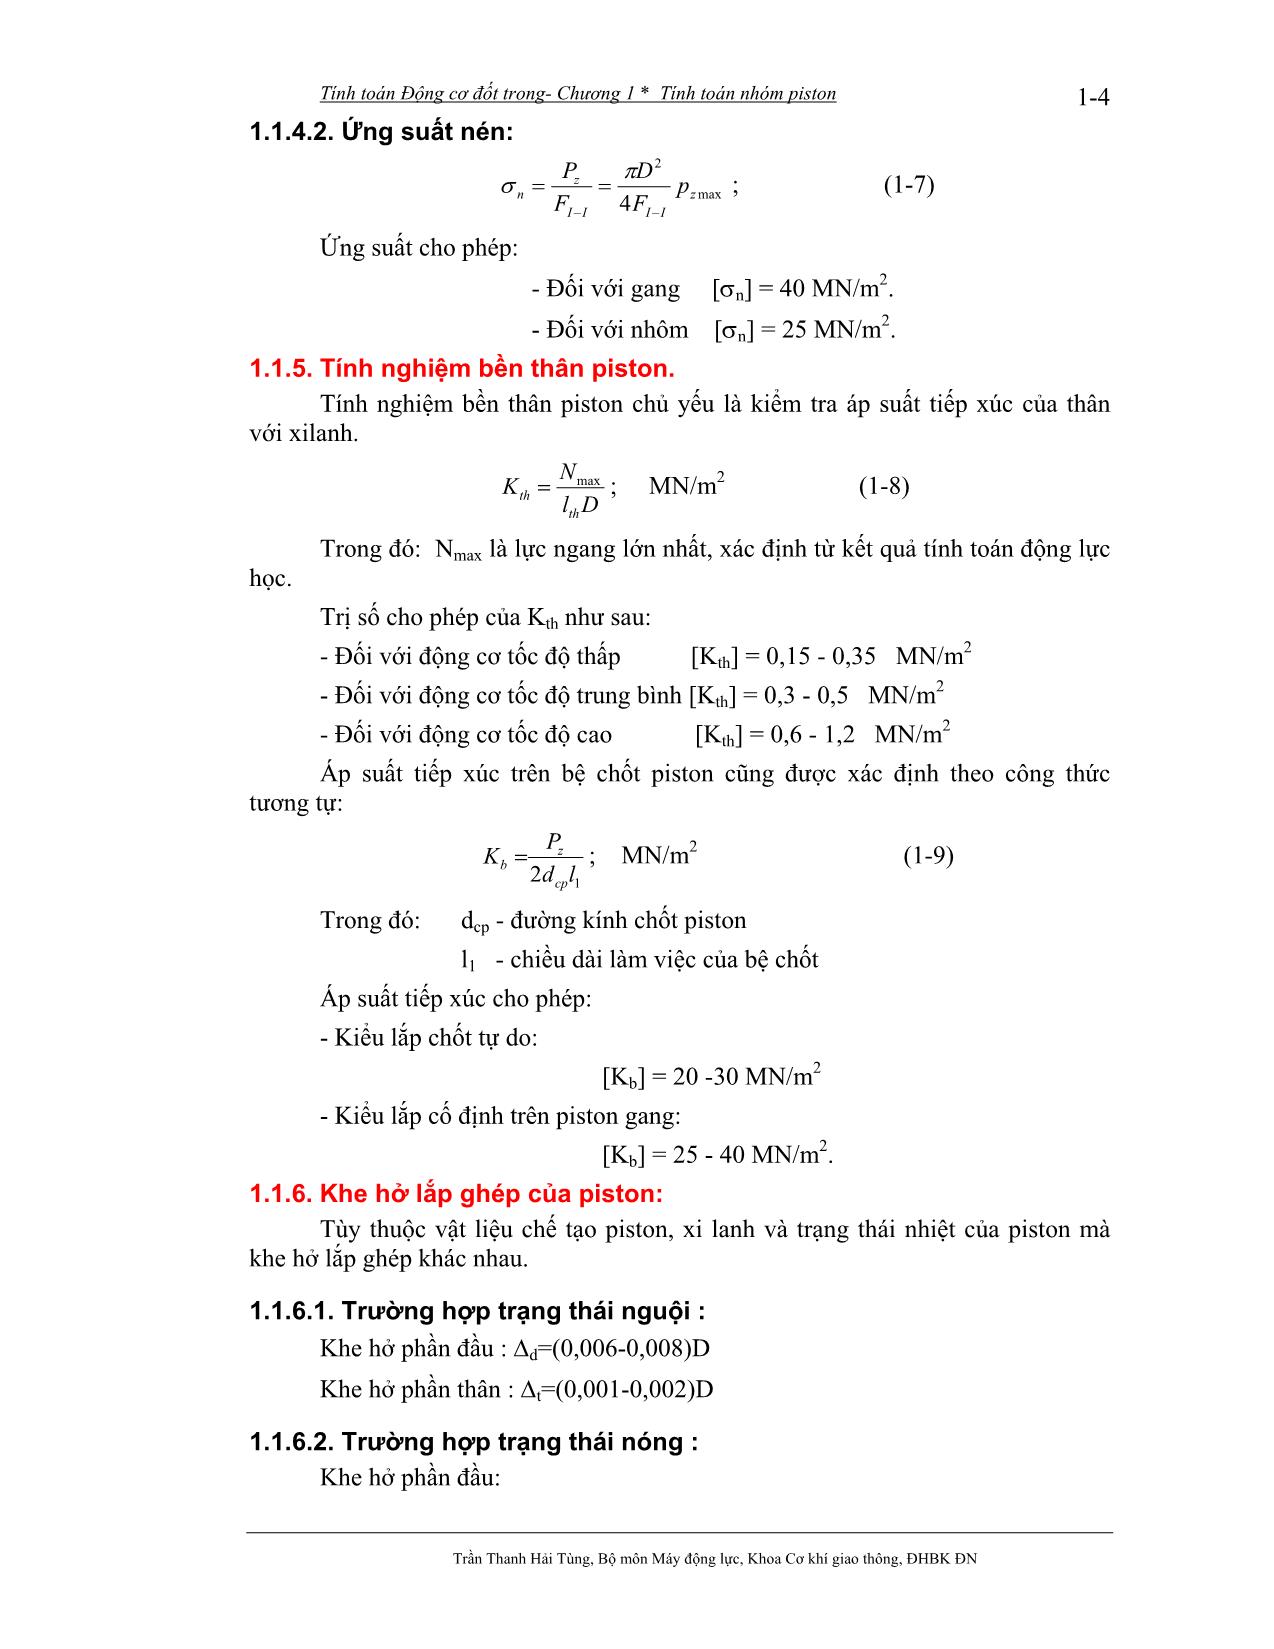 Bài giảng Tính toán thiết kế động cơ đốt trong - Trần Thanh Hải Tùng trang 5